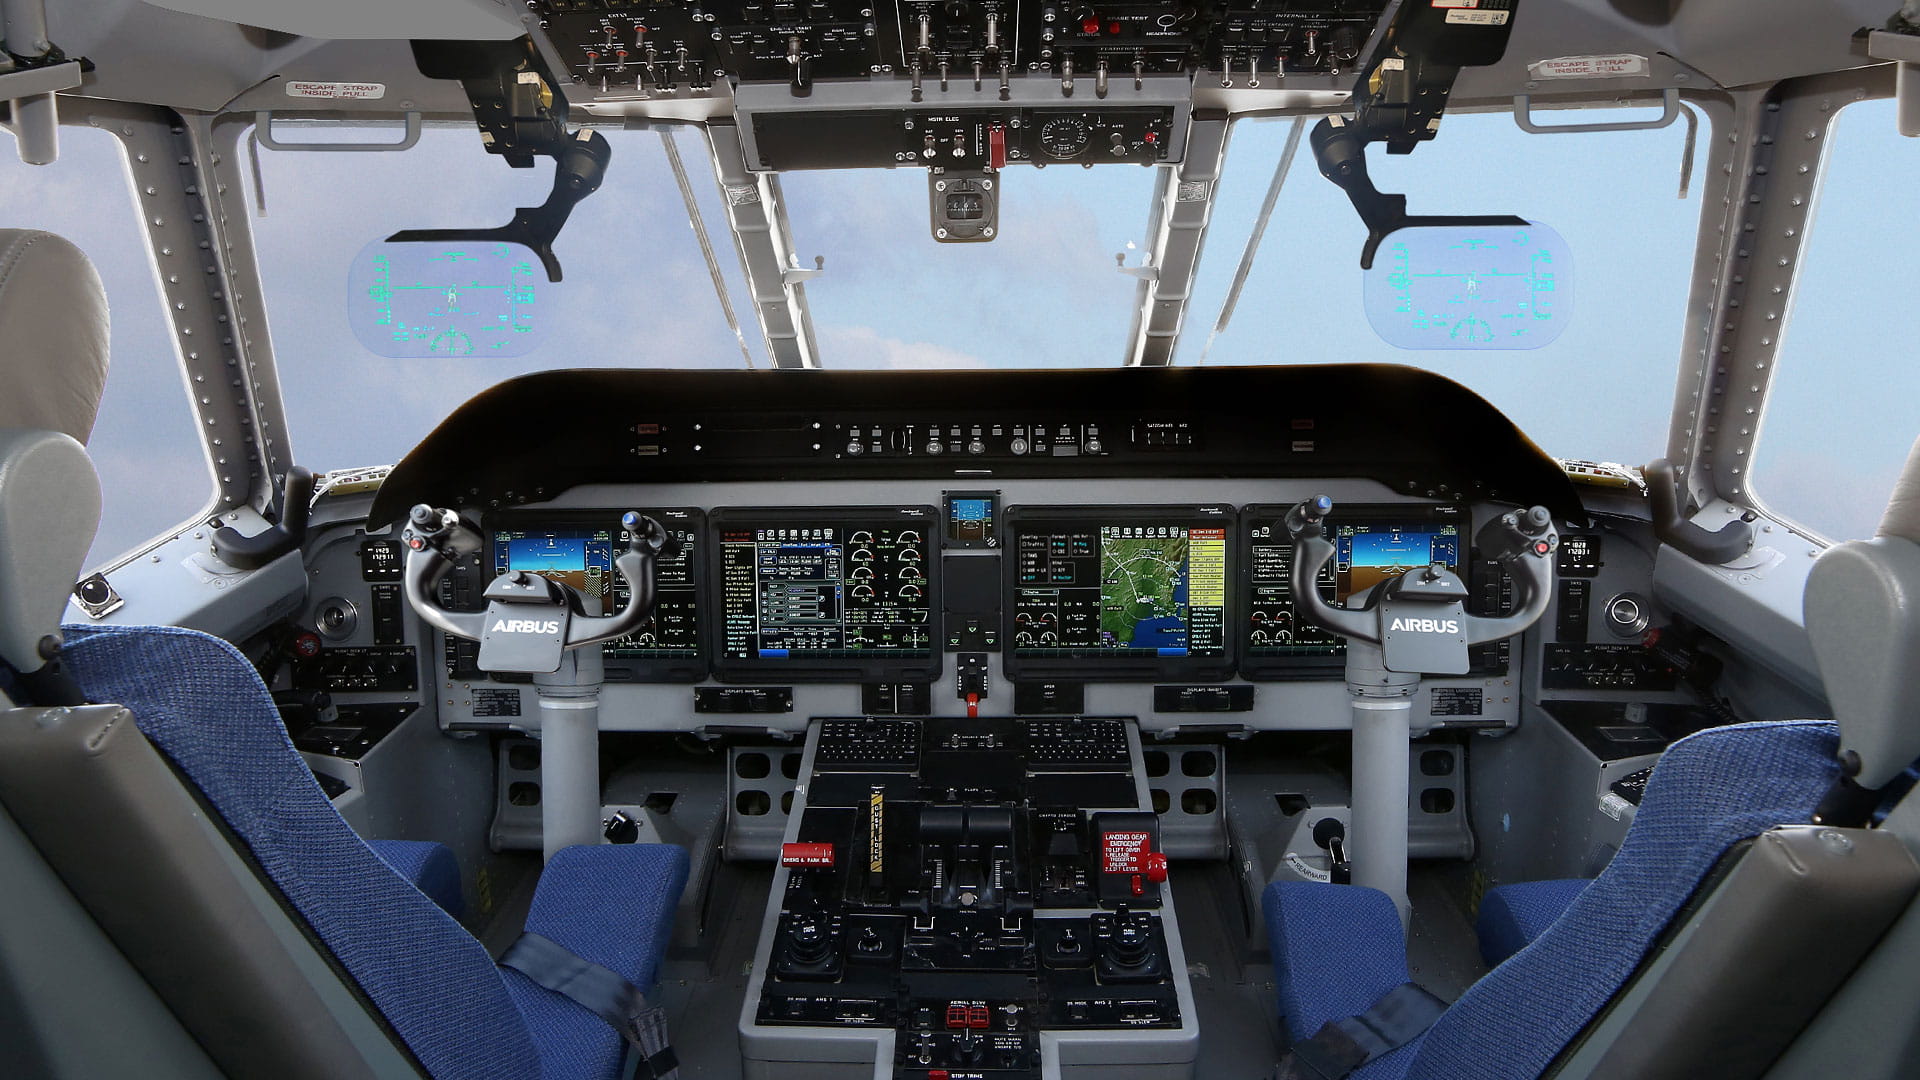 Airbus C295 flight deck